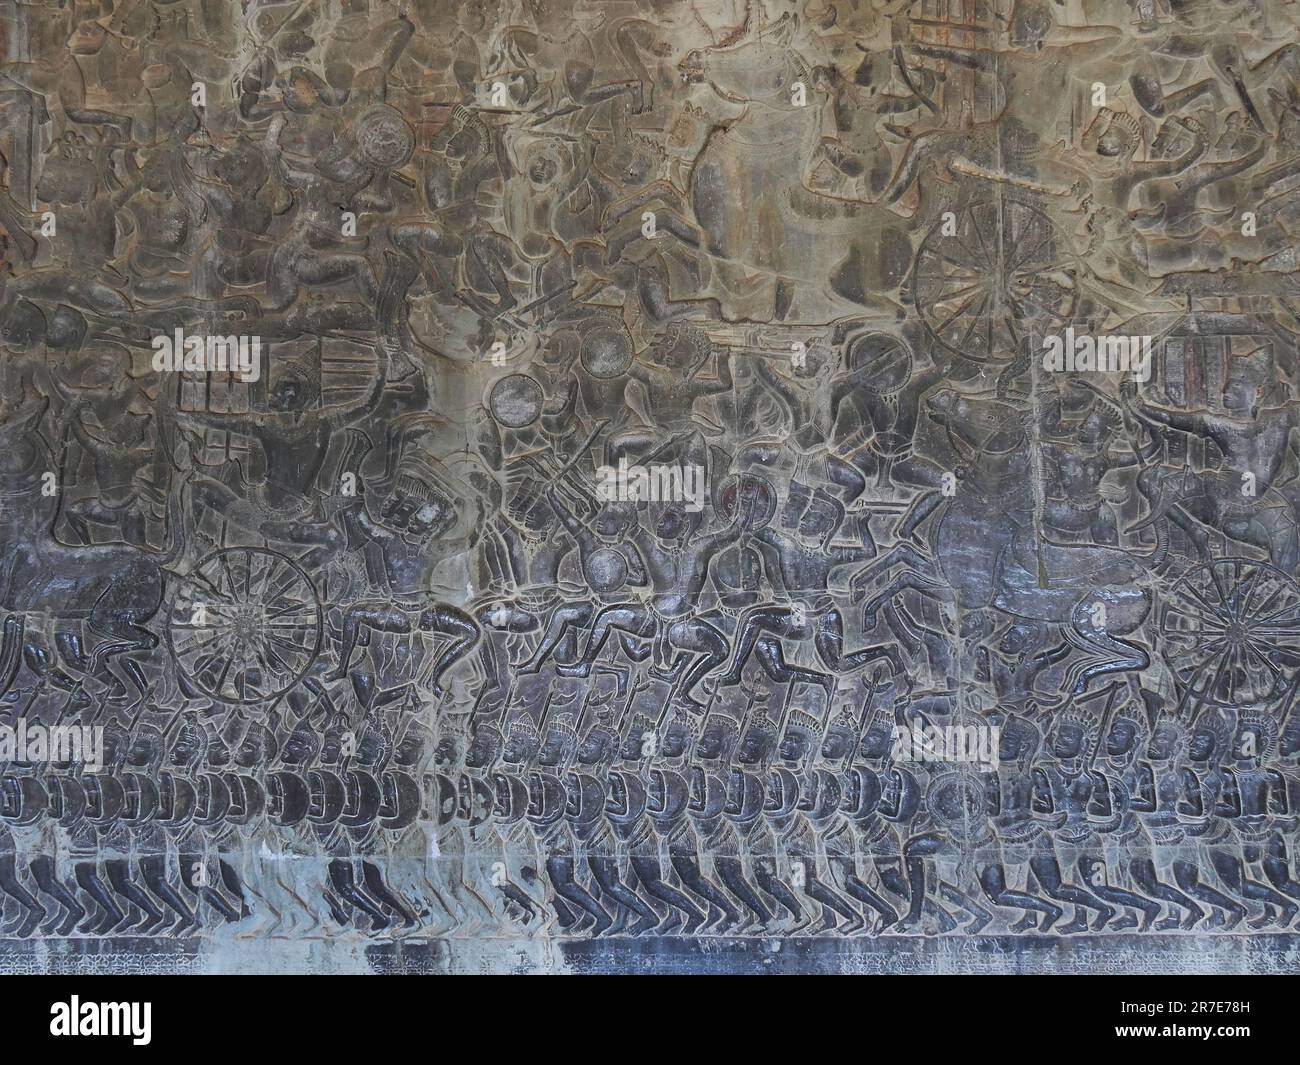 Il Tempio di Angkor Wat, la Provincia di Siem Reap, il complesso del Tempio di Angkor, patrimonio mondiale dell'UNESCO nel 1192, costruito nel XII secolo, in Cambogia Foto Stock